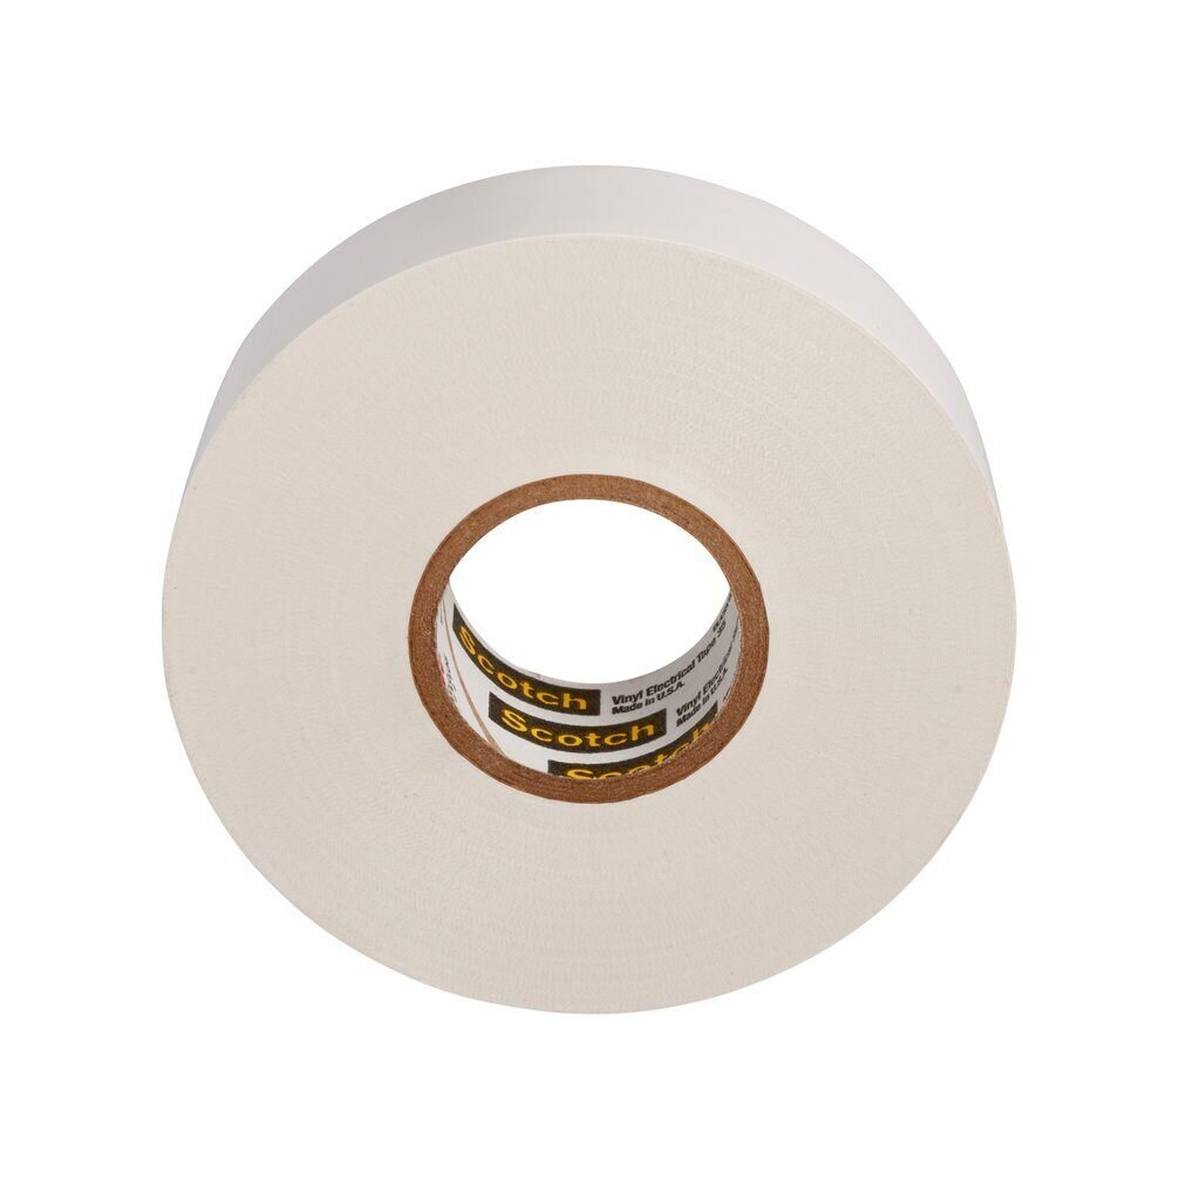 3M Scotch 35 Vinyl ruban électrique isolant, blanc, 19 mm x 20 m, 0,18 mm